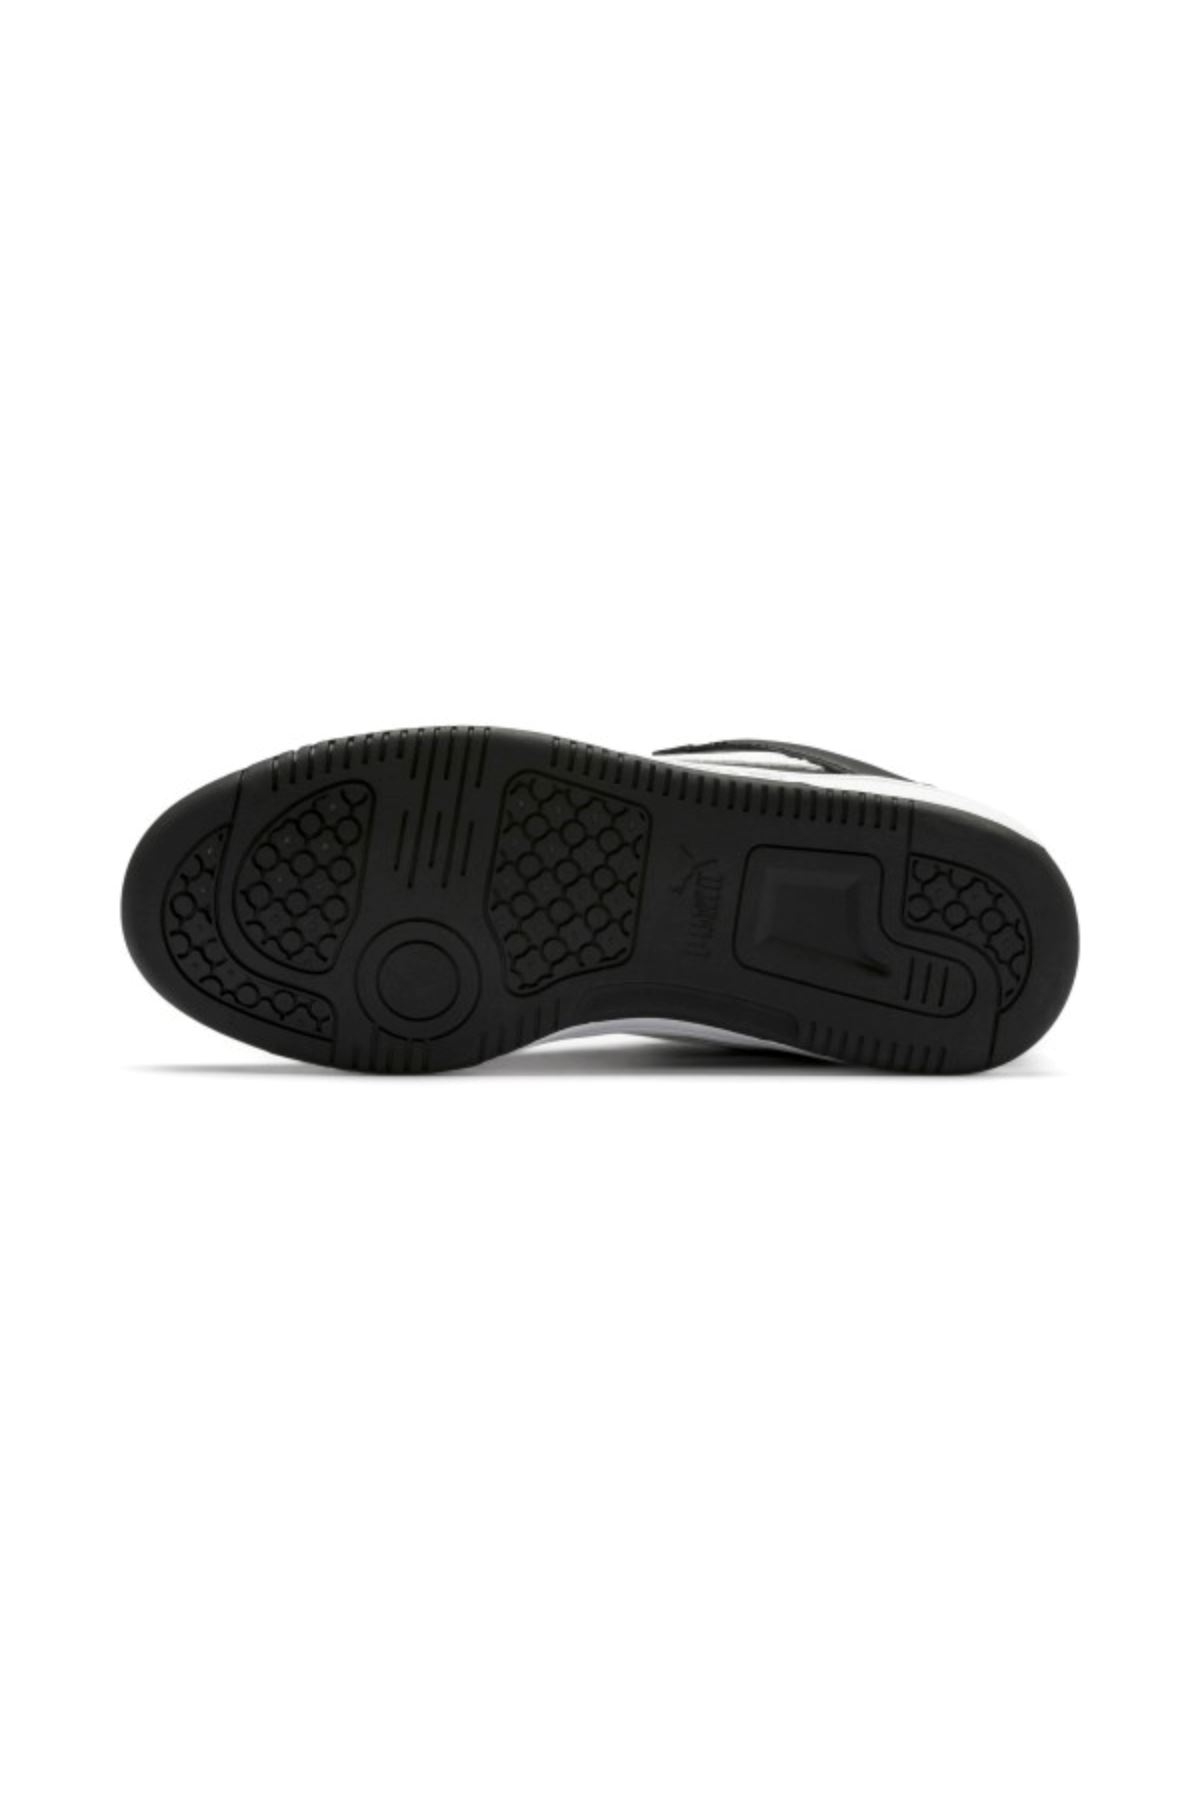 Kadın Siyah Spor Ayakkabı - 370490-02